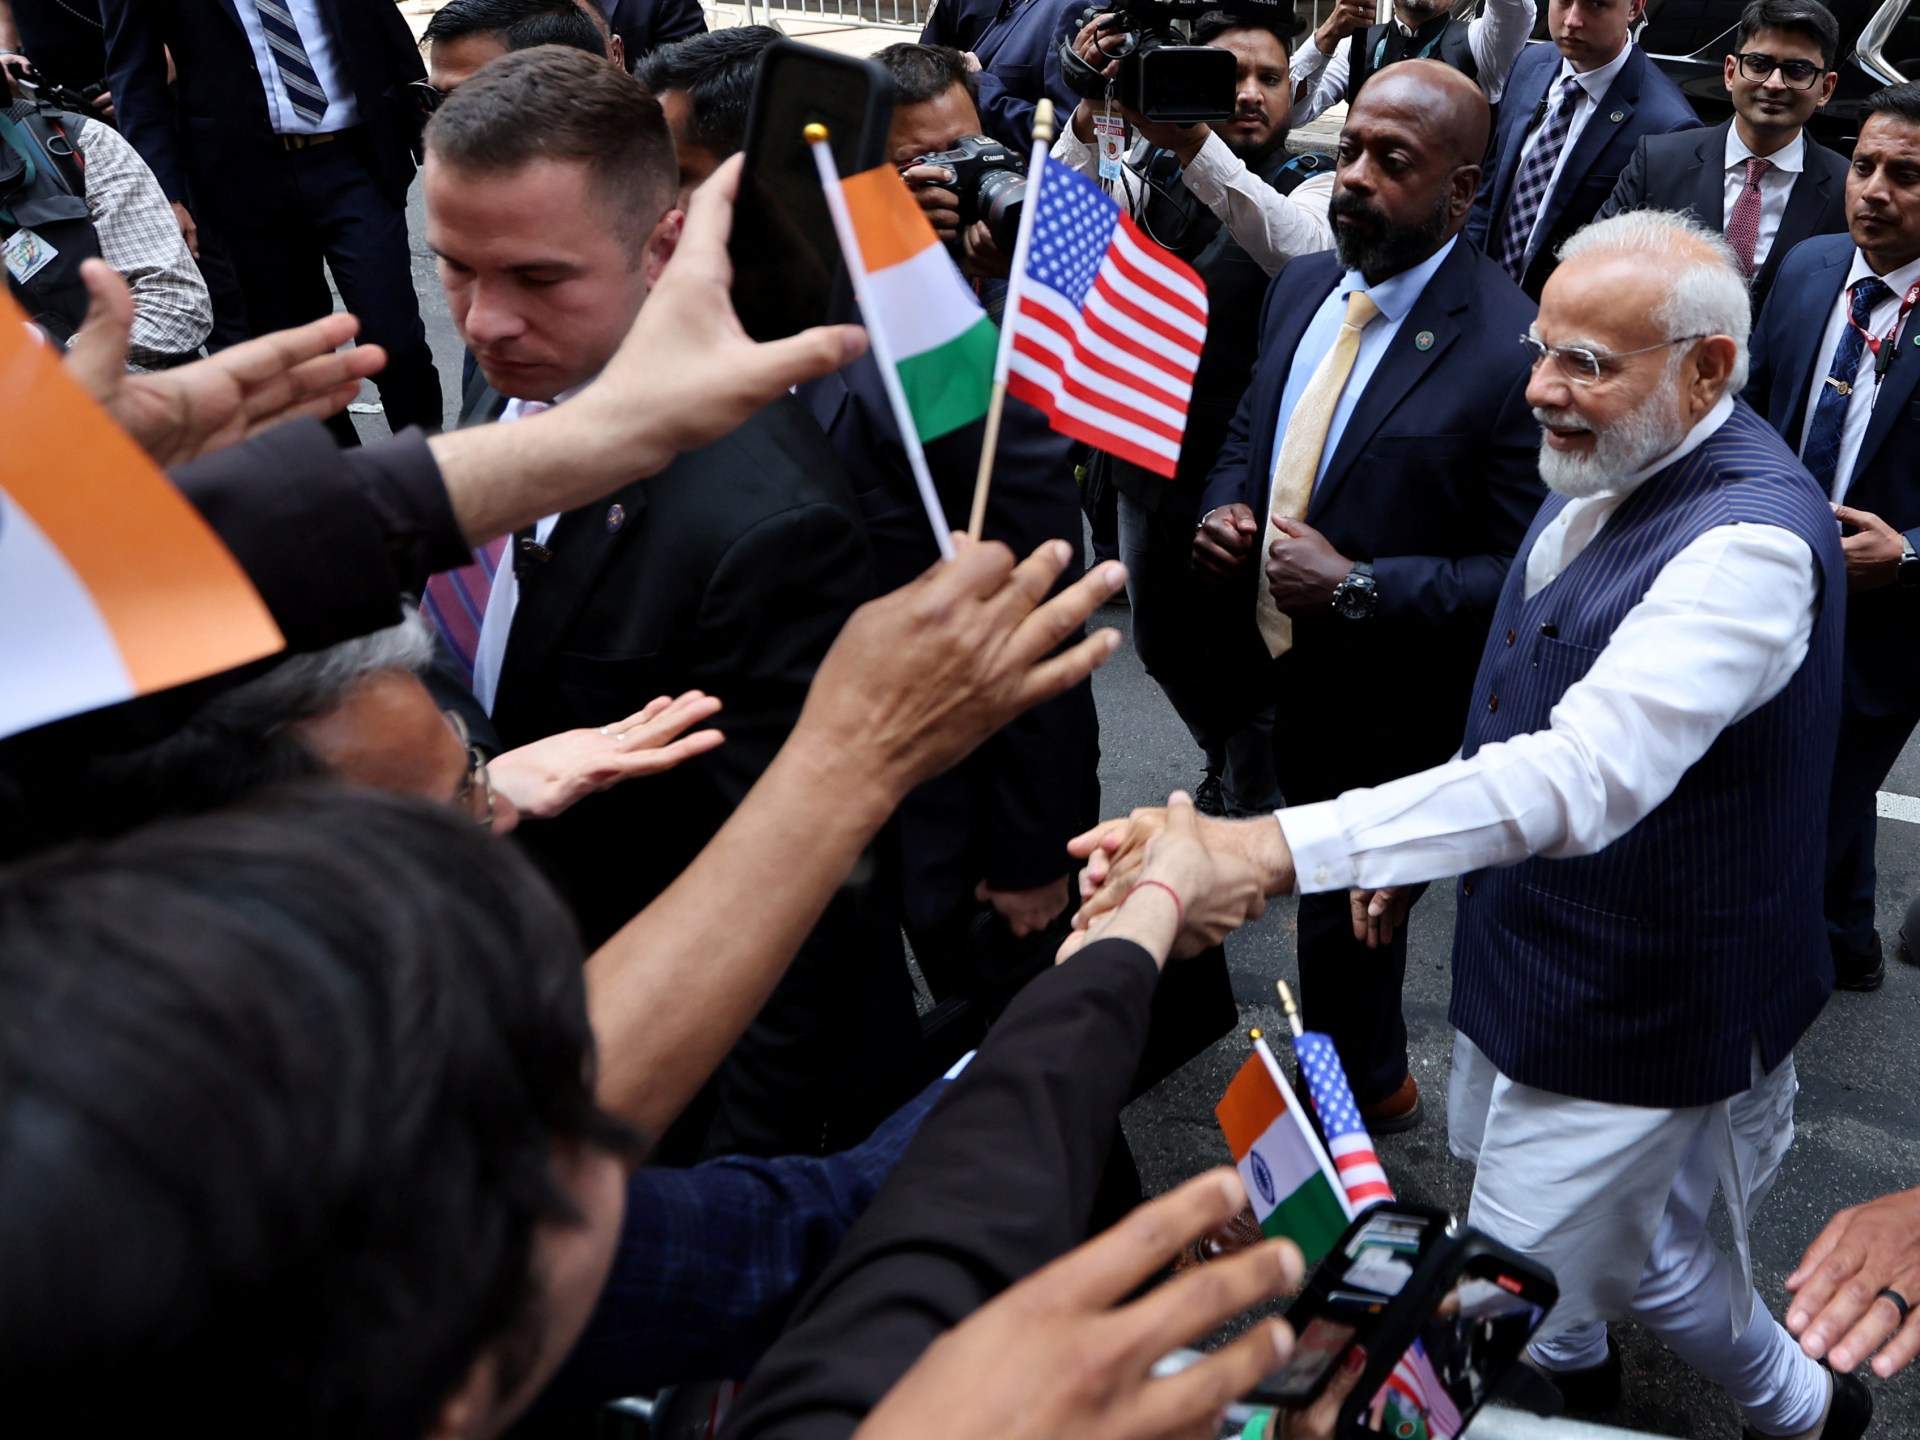 Modi India menghadapi kritik hak asasi manusia menjelang kunjungan AS |  Berita Narendra Modi